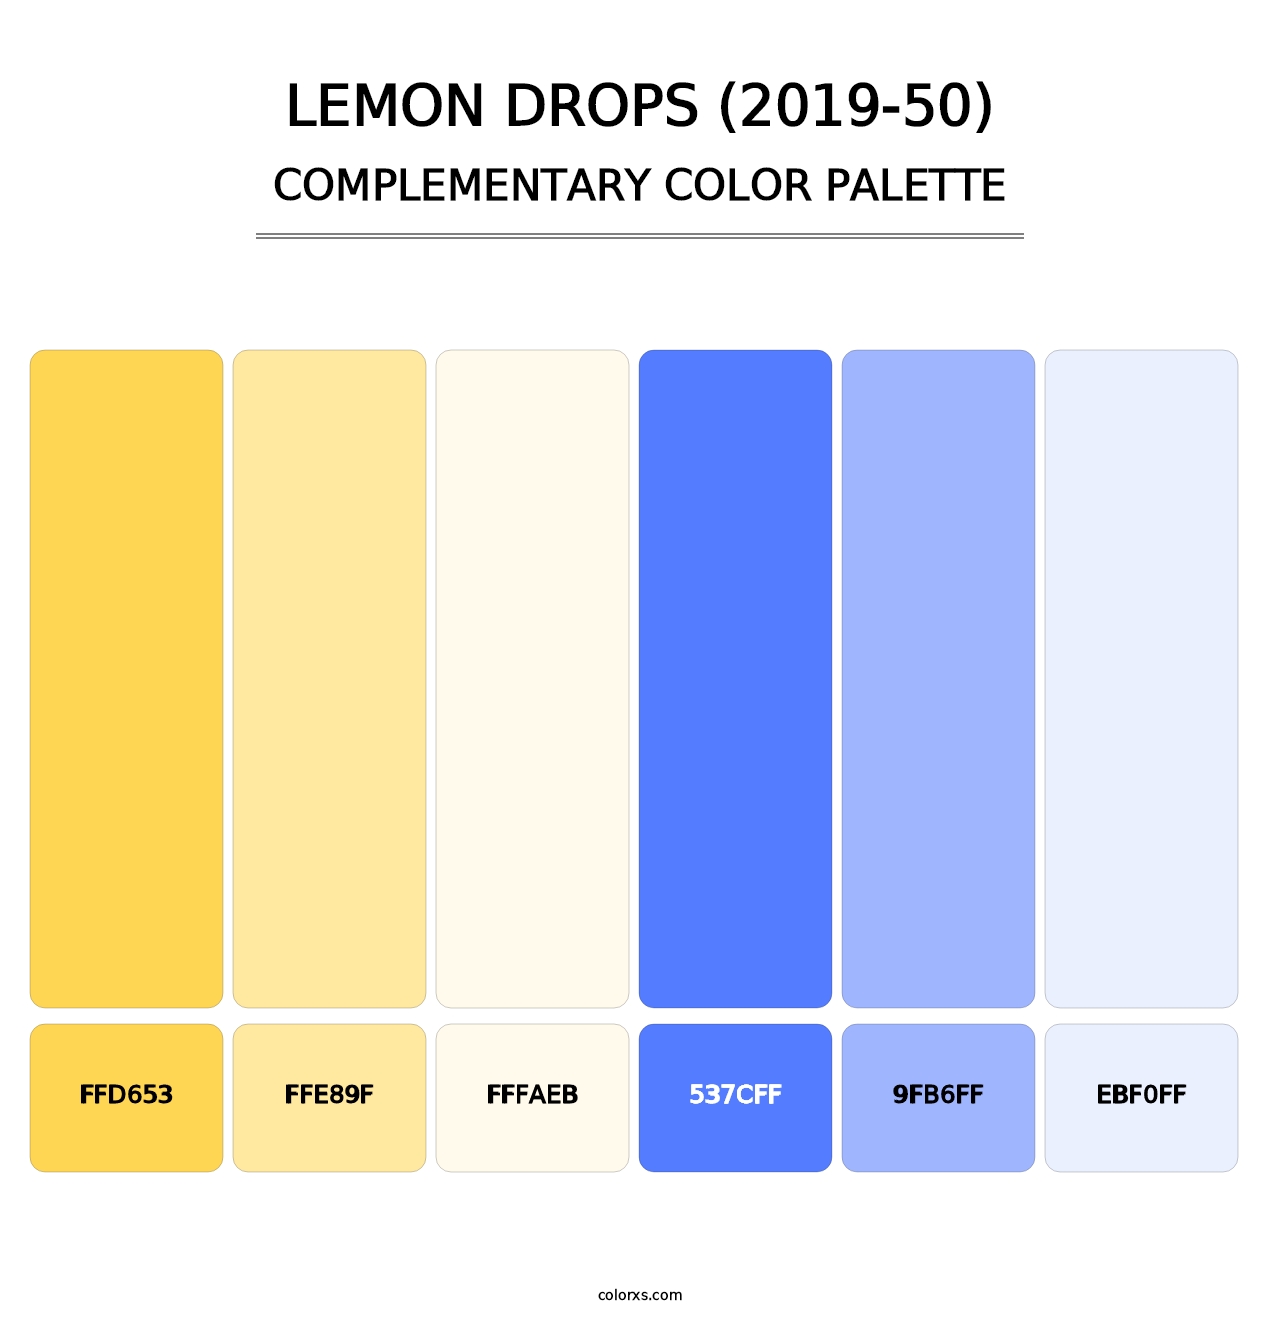 Lemon Drops (2019-50) - Complementary Color Palette